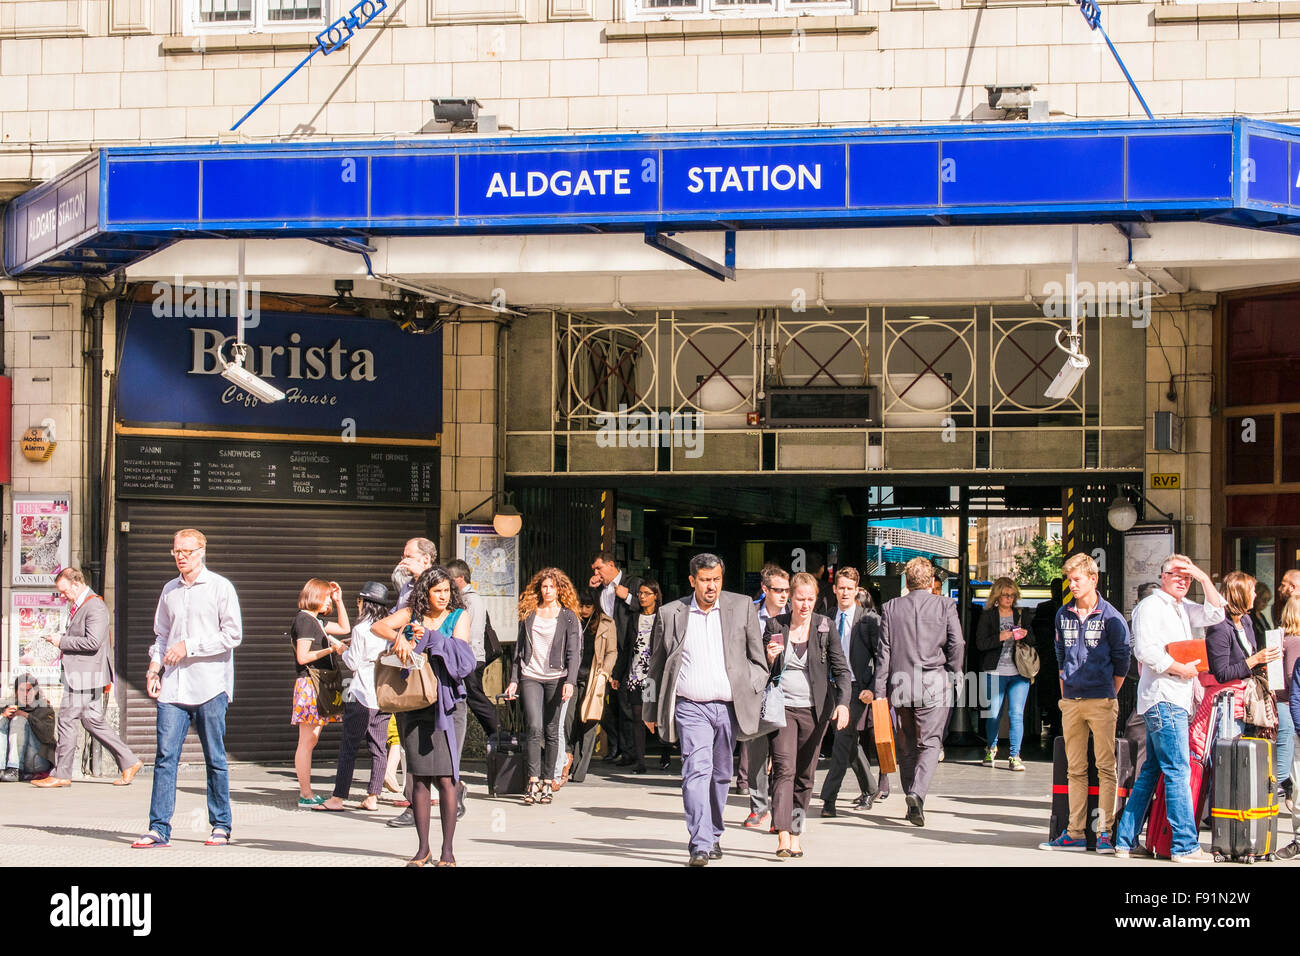 Aldgate Underground station, London, England, U.K. Stock Photo